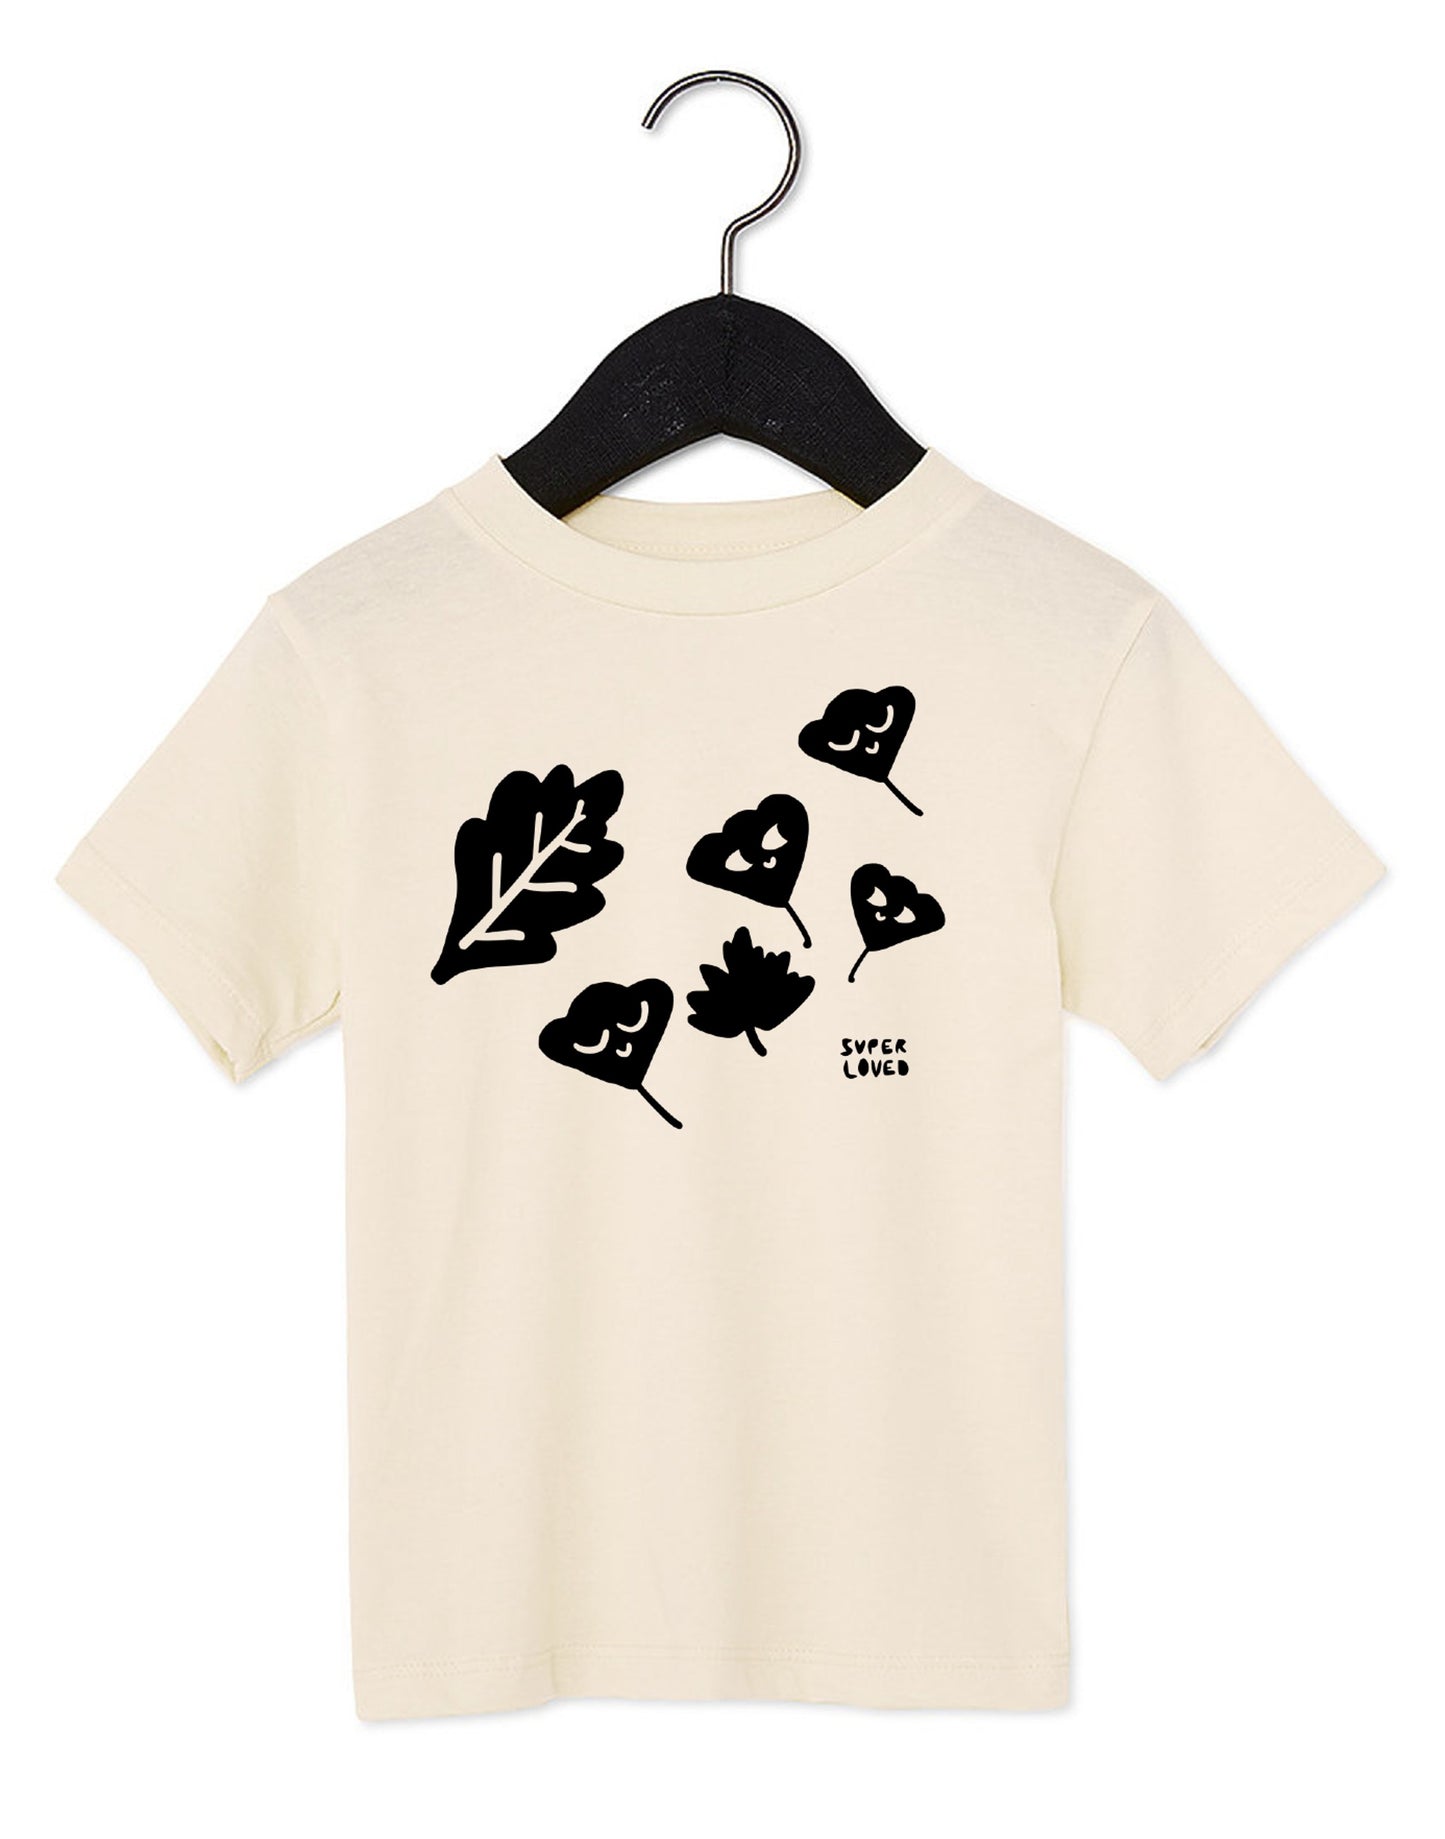 SUPER LOVED, B/W Fall Foliage Kids T-Shirt